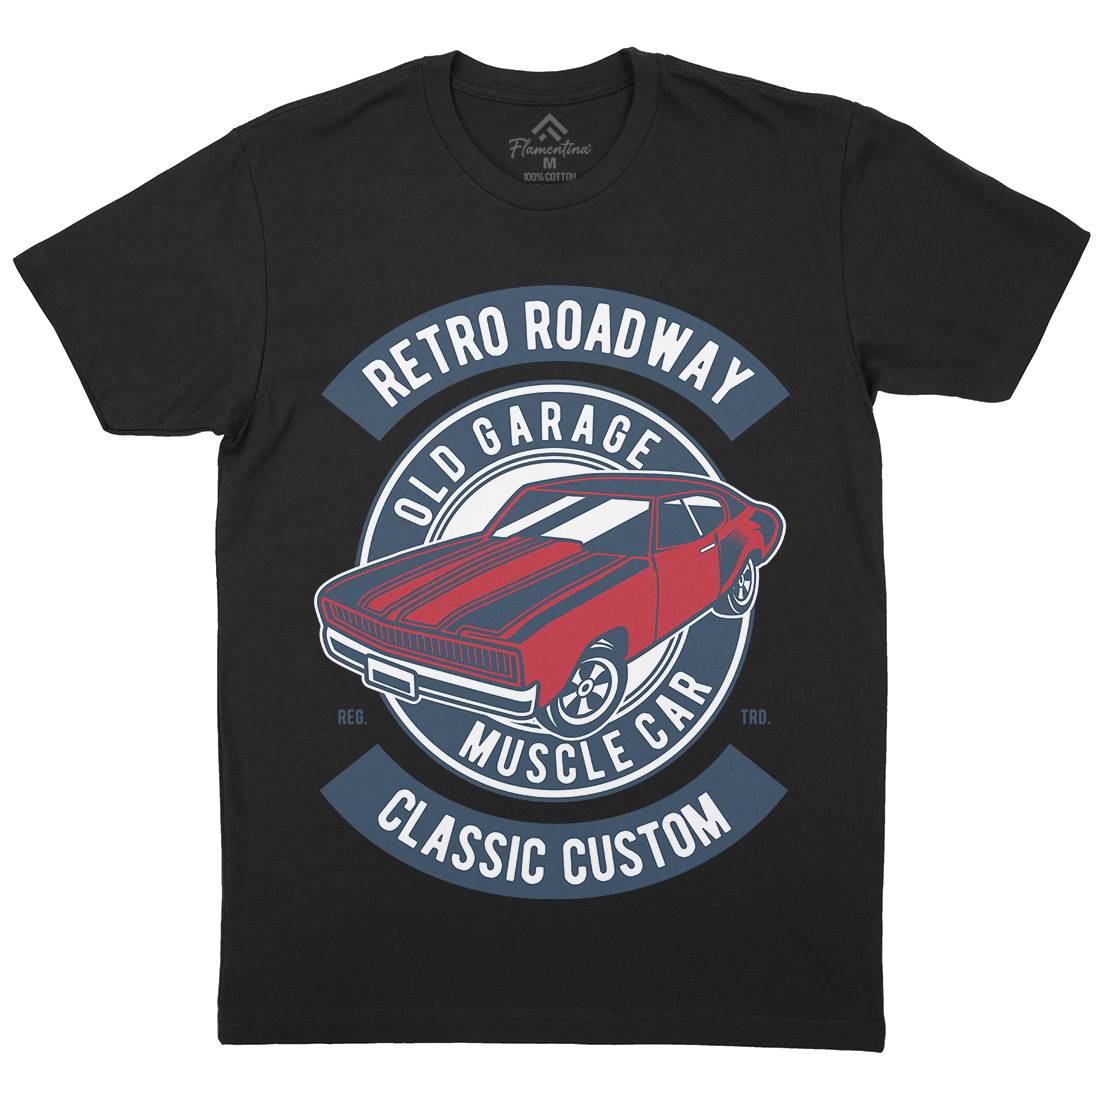 Retro Roadway Mens Organic Crew Neck T-Shirt Cars D568